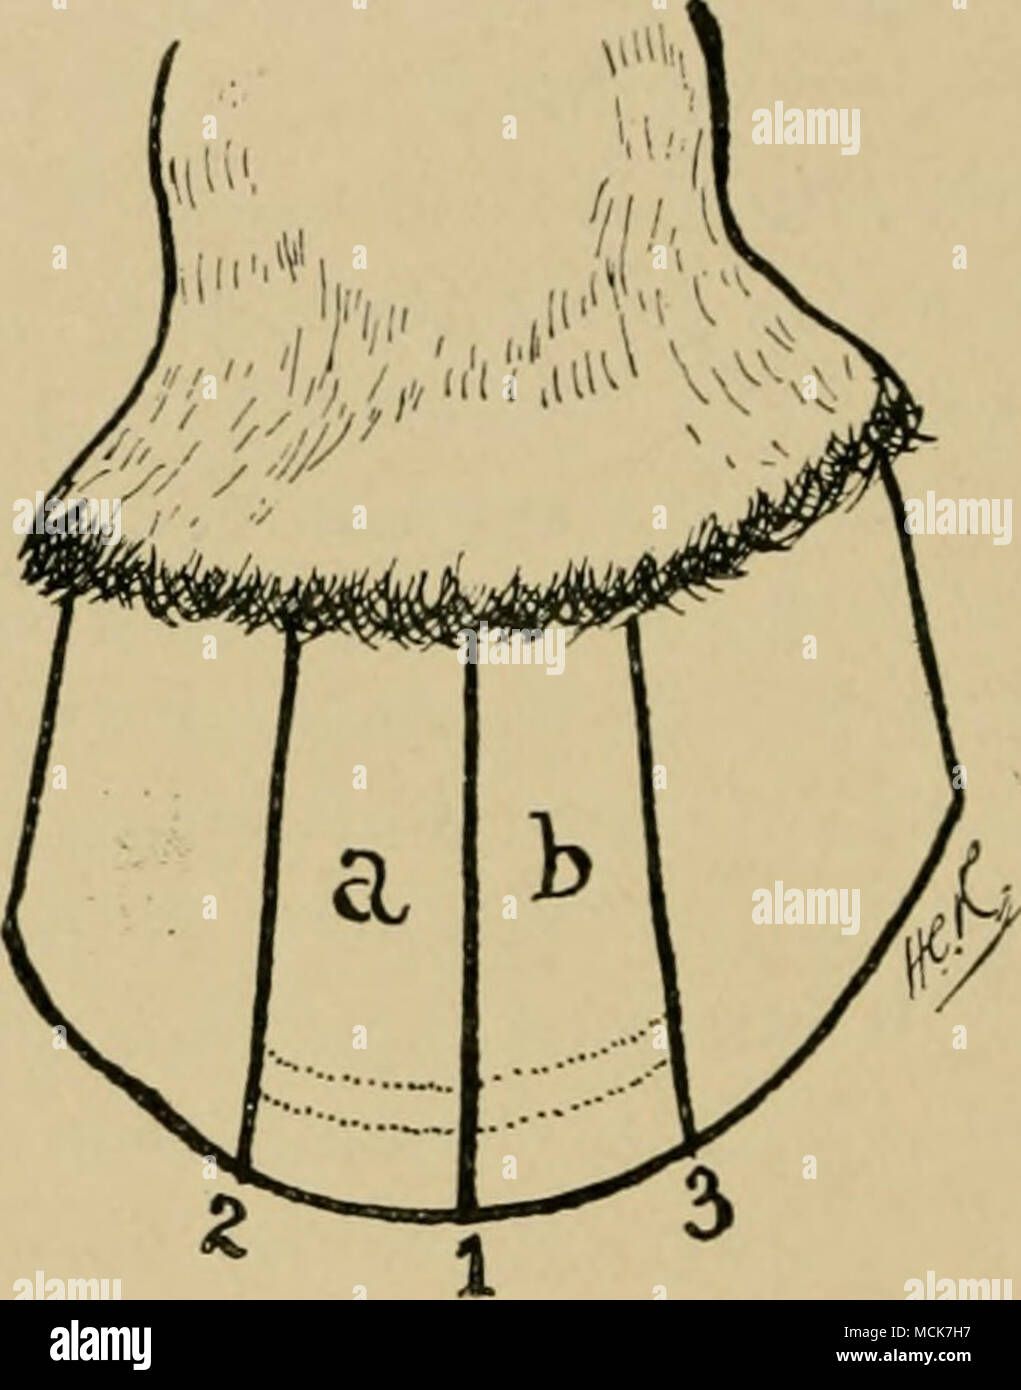 Abb. 120.- Diagramm des Hufes zeigt die Position der drei Nuten in der  Behandlung von hufrehe. Das Tier ist aus Gusseisen, die Schuhe entfernt und  drei vertikale Rillen in der Wand.